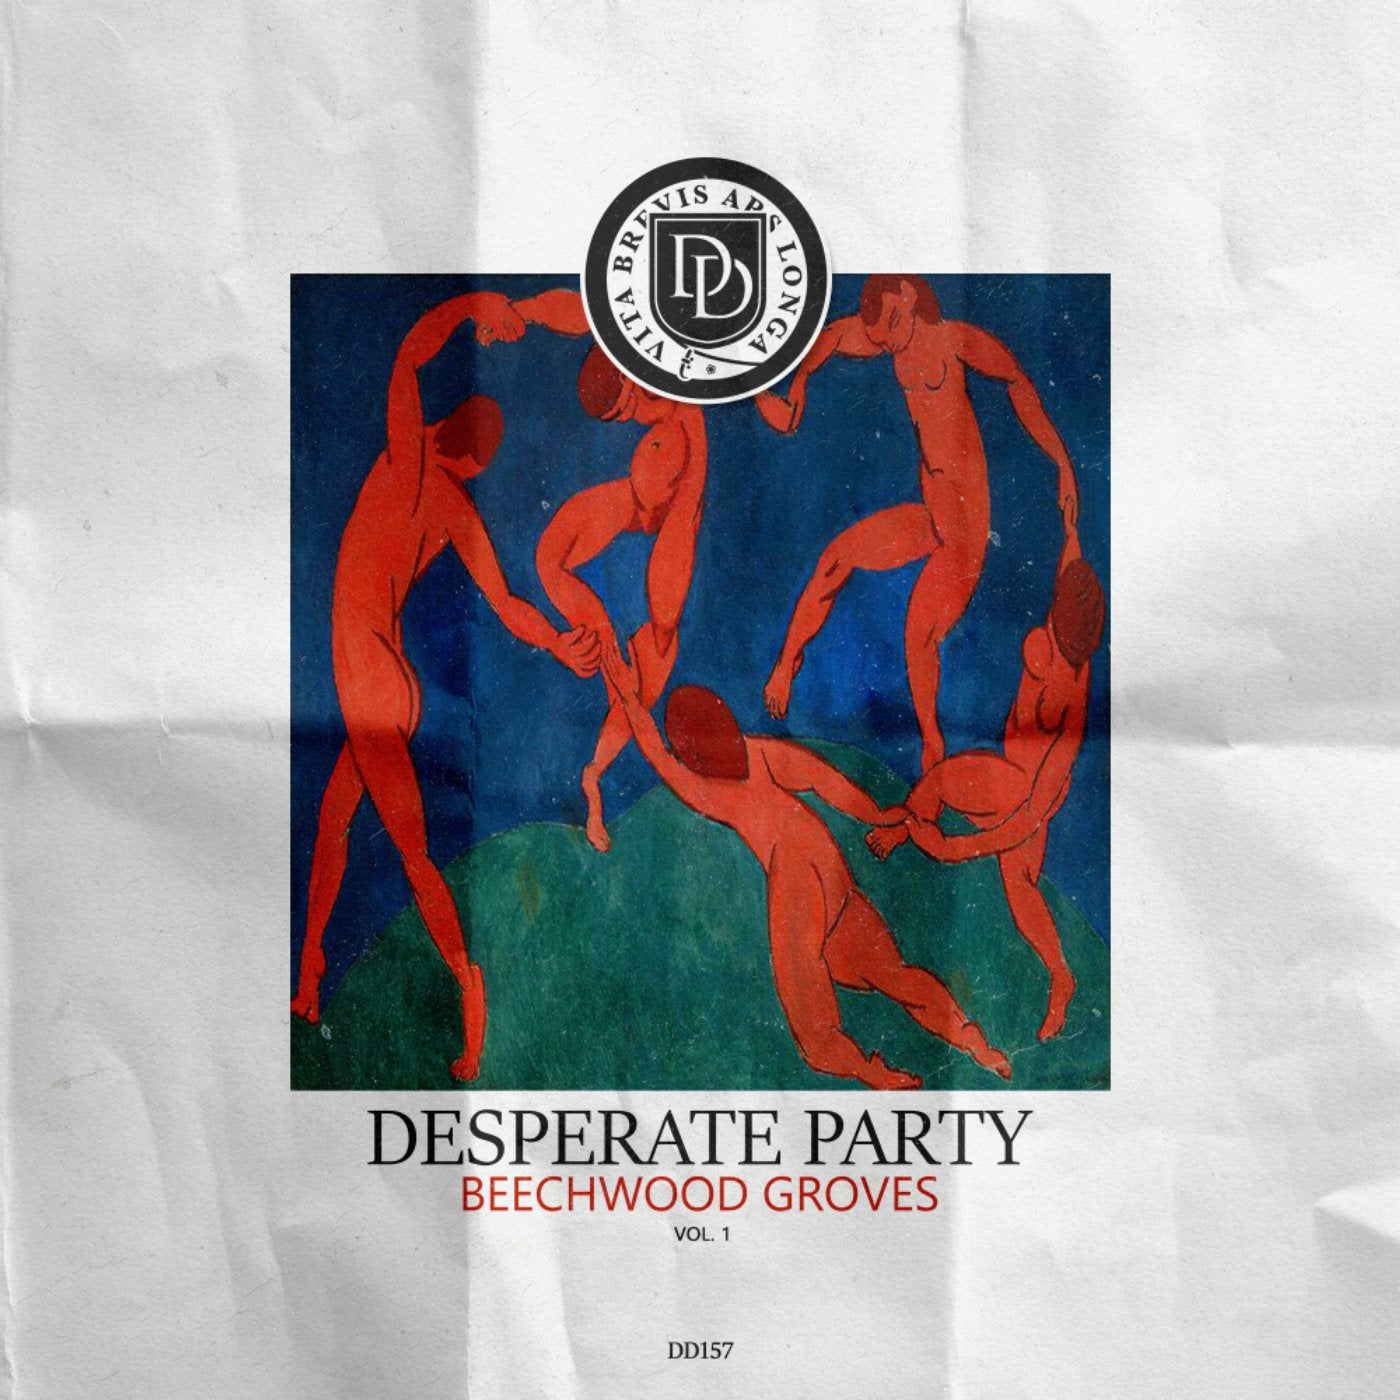 Desperate Party, Vol. 1